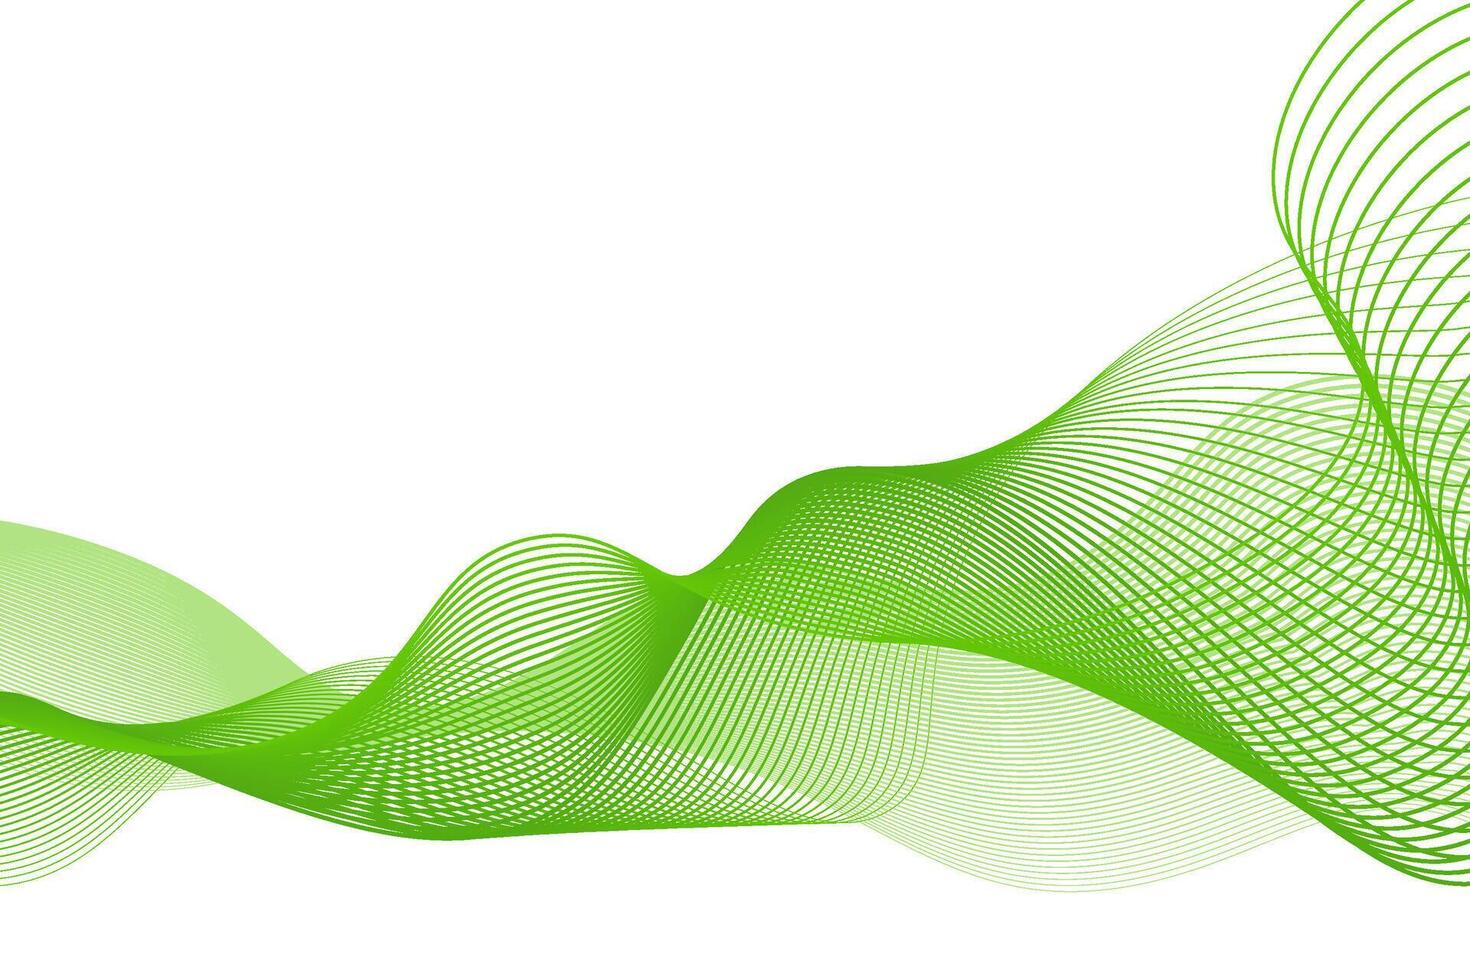 abstrakt grön vågig Ränder isolerat på en transparent bakgrund. kreativ linje konst bakgrund, Vinka design. Lycklig st. Patricks dag. vektor illustration.